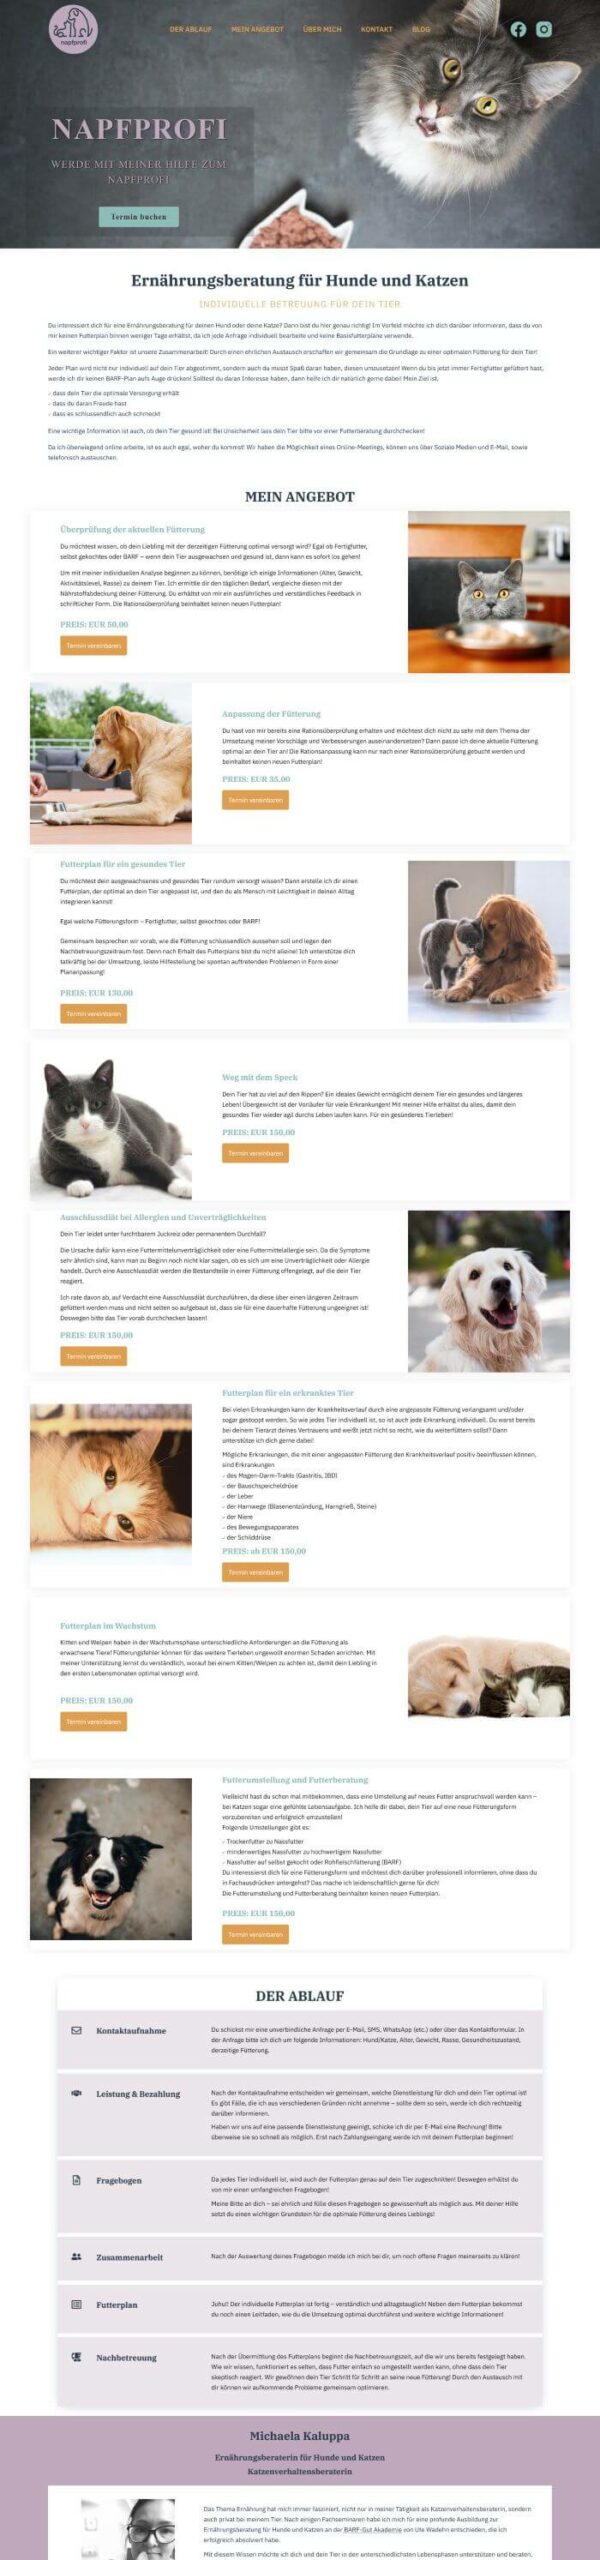 Website Ernährungsberatung Hunde und Katzen Wien napfprofi.at